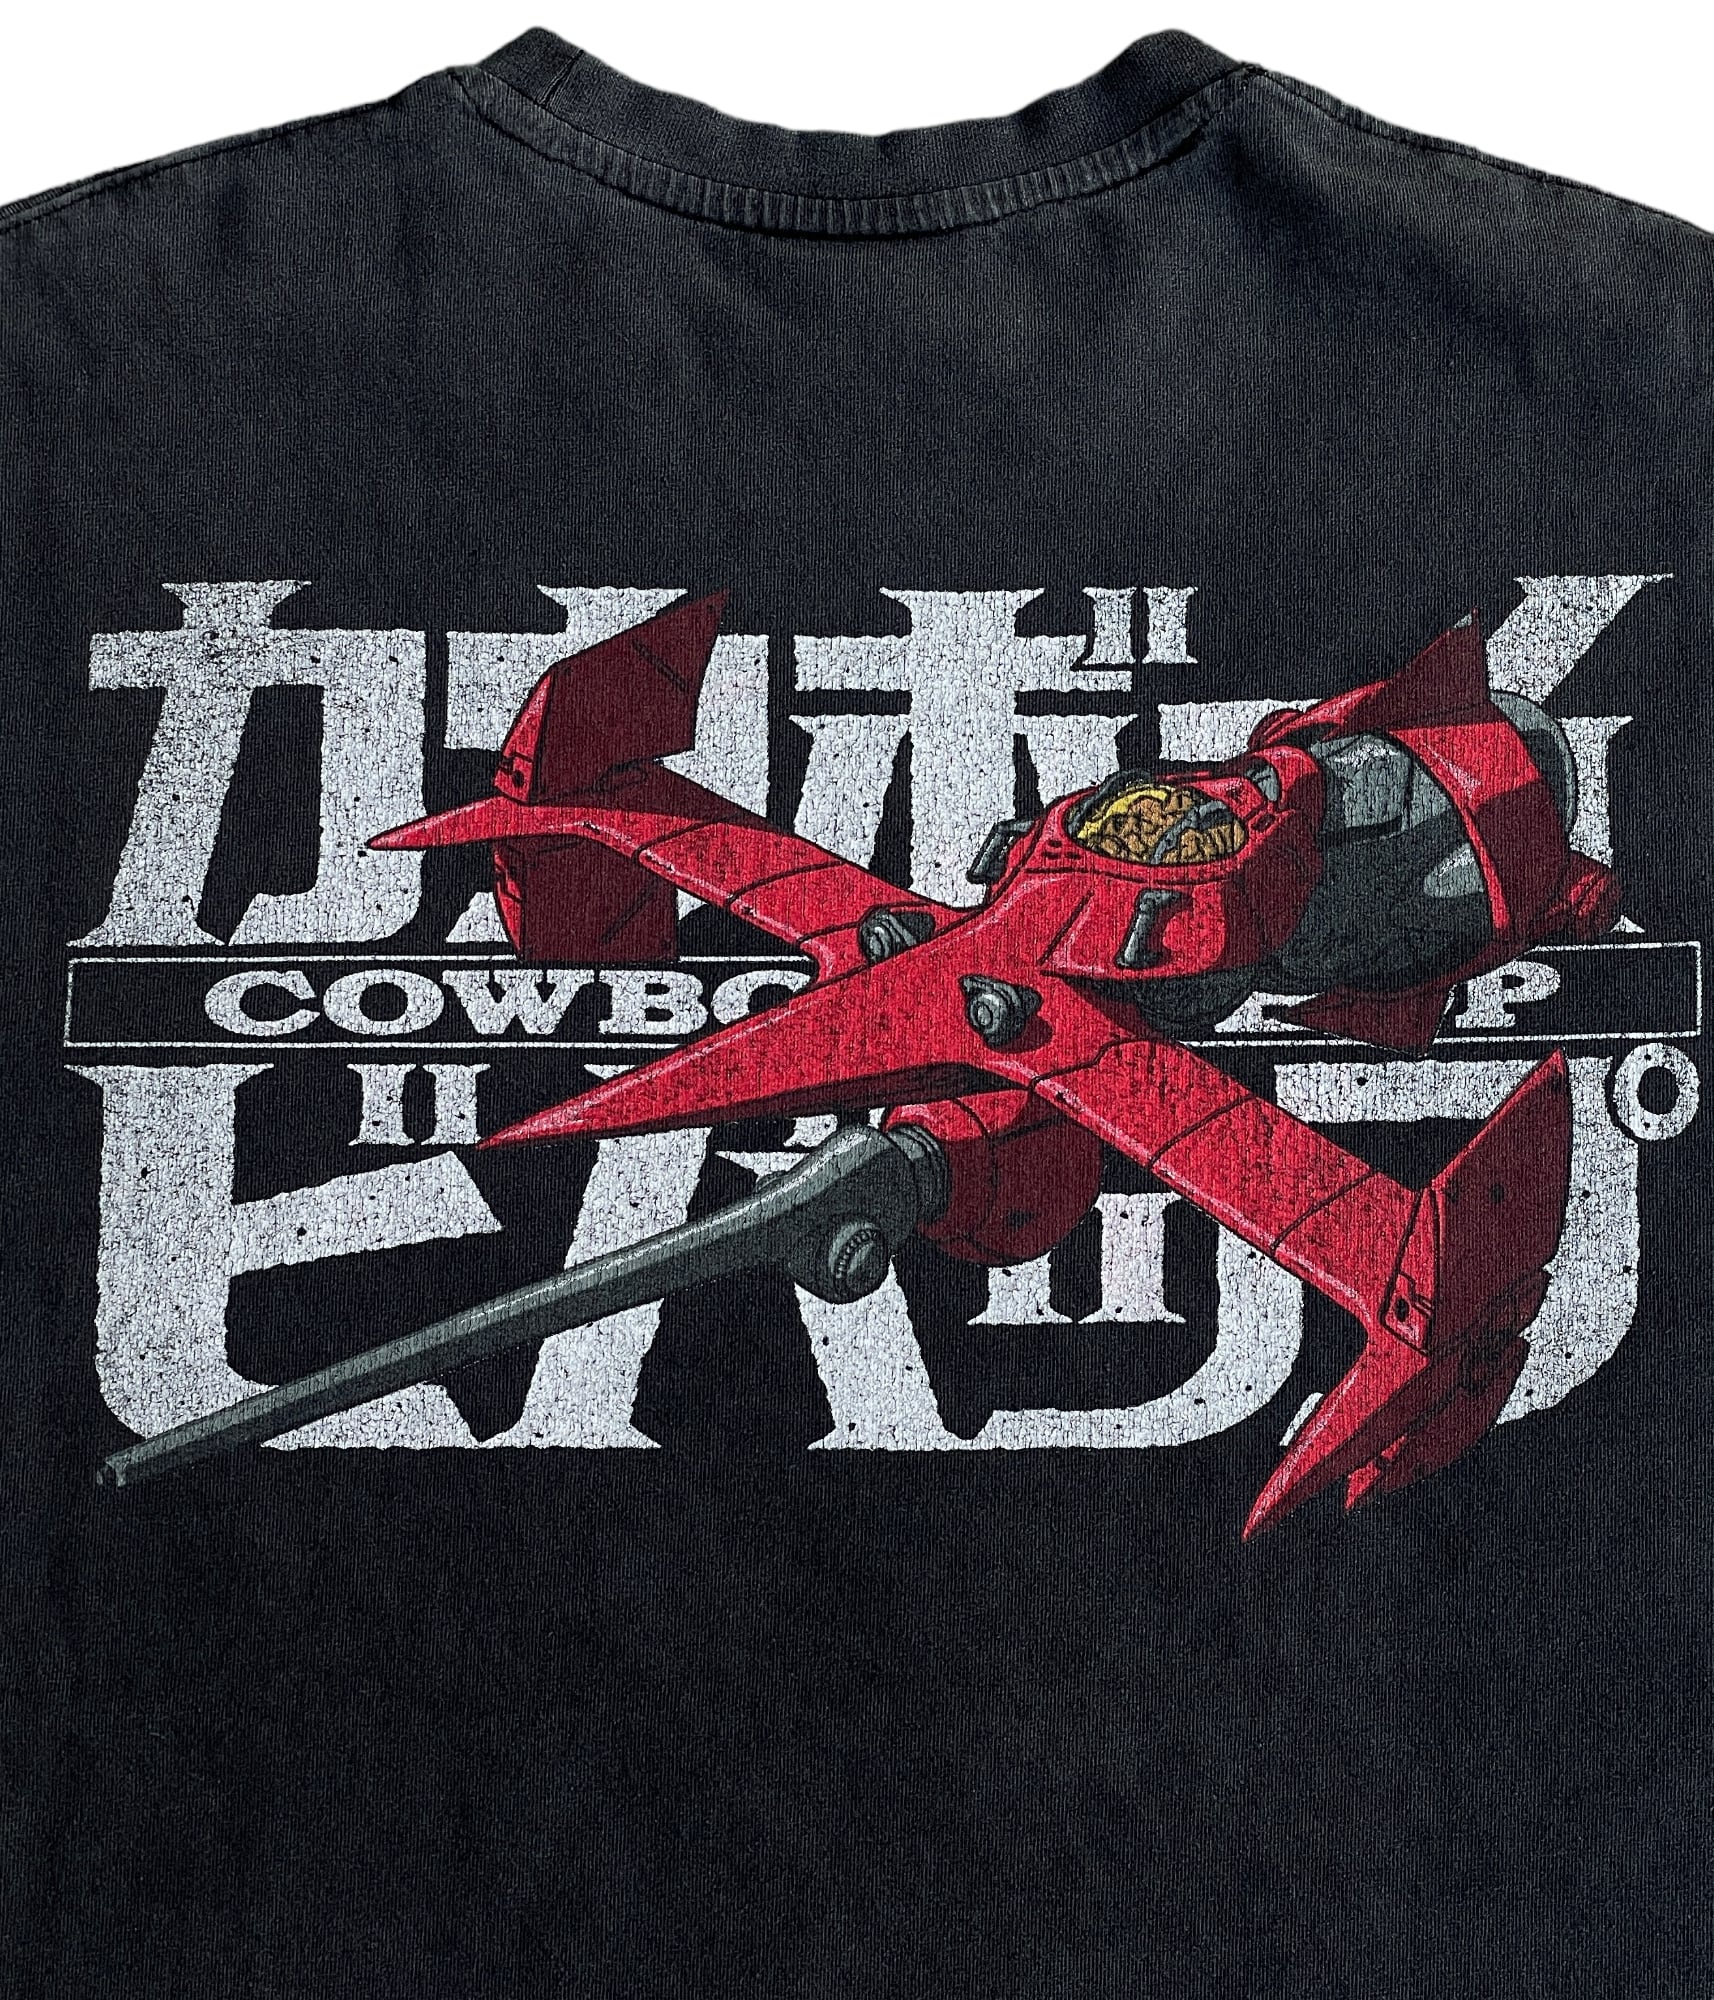 90s 00s cowboy bebop t-shirt